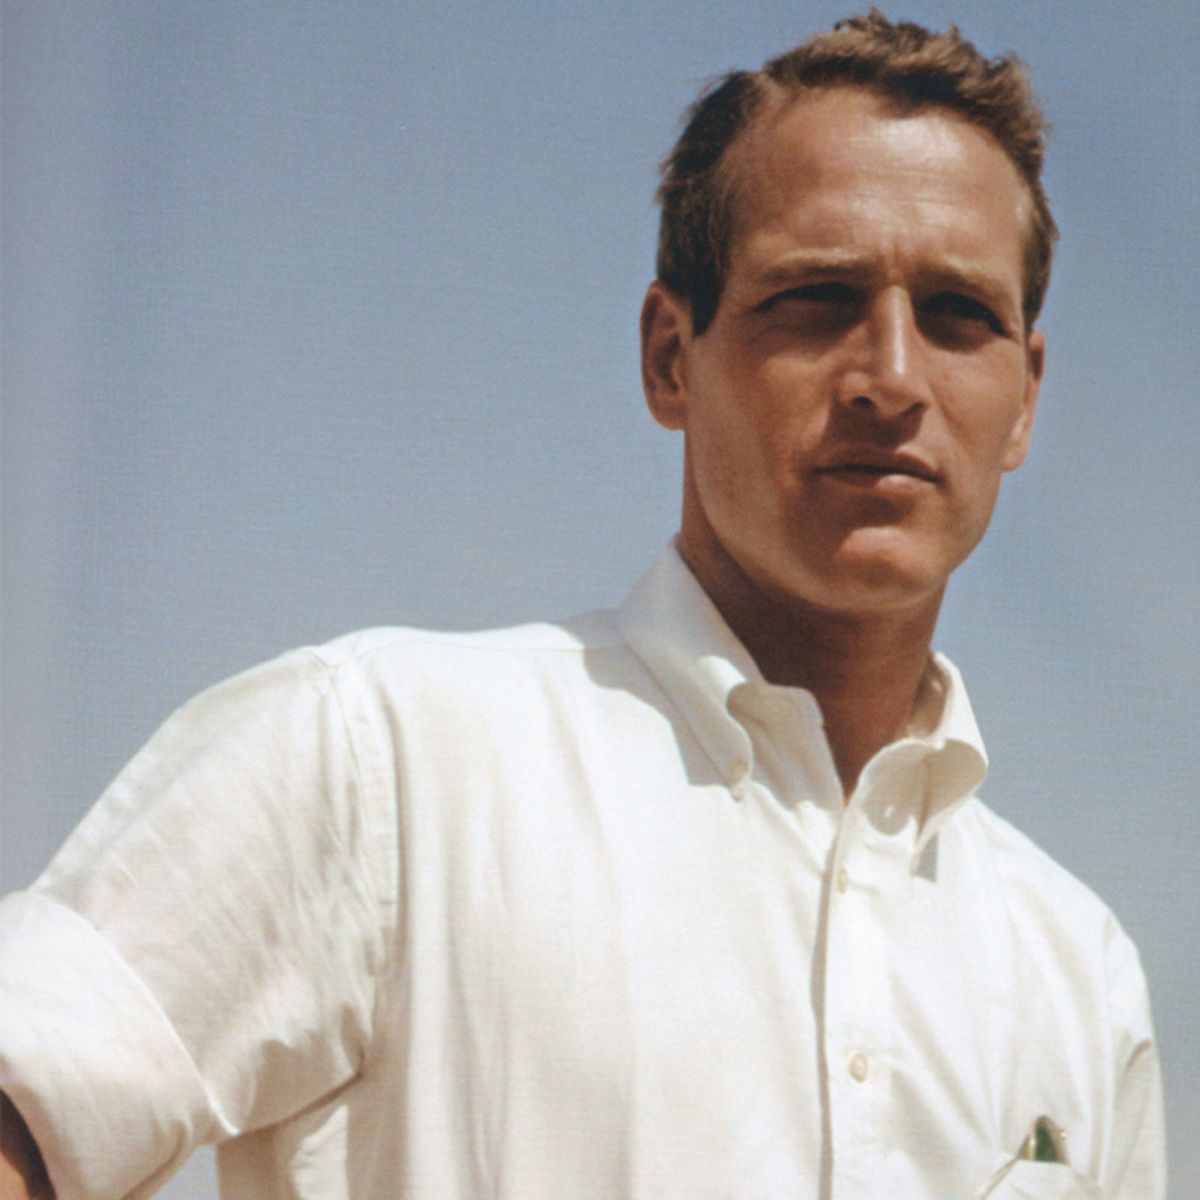 Paul Newman in a white oxford shirt